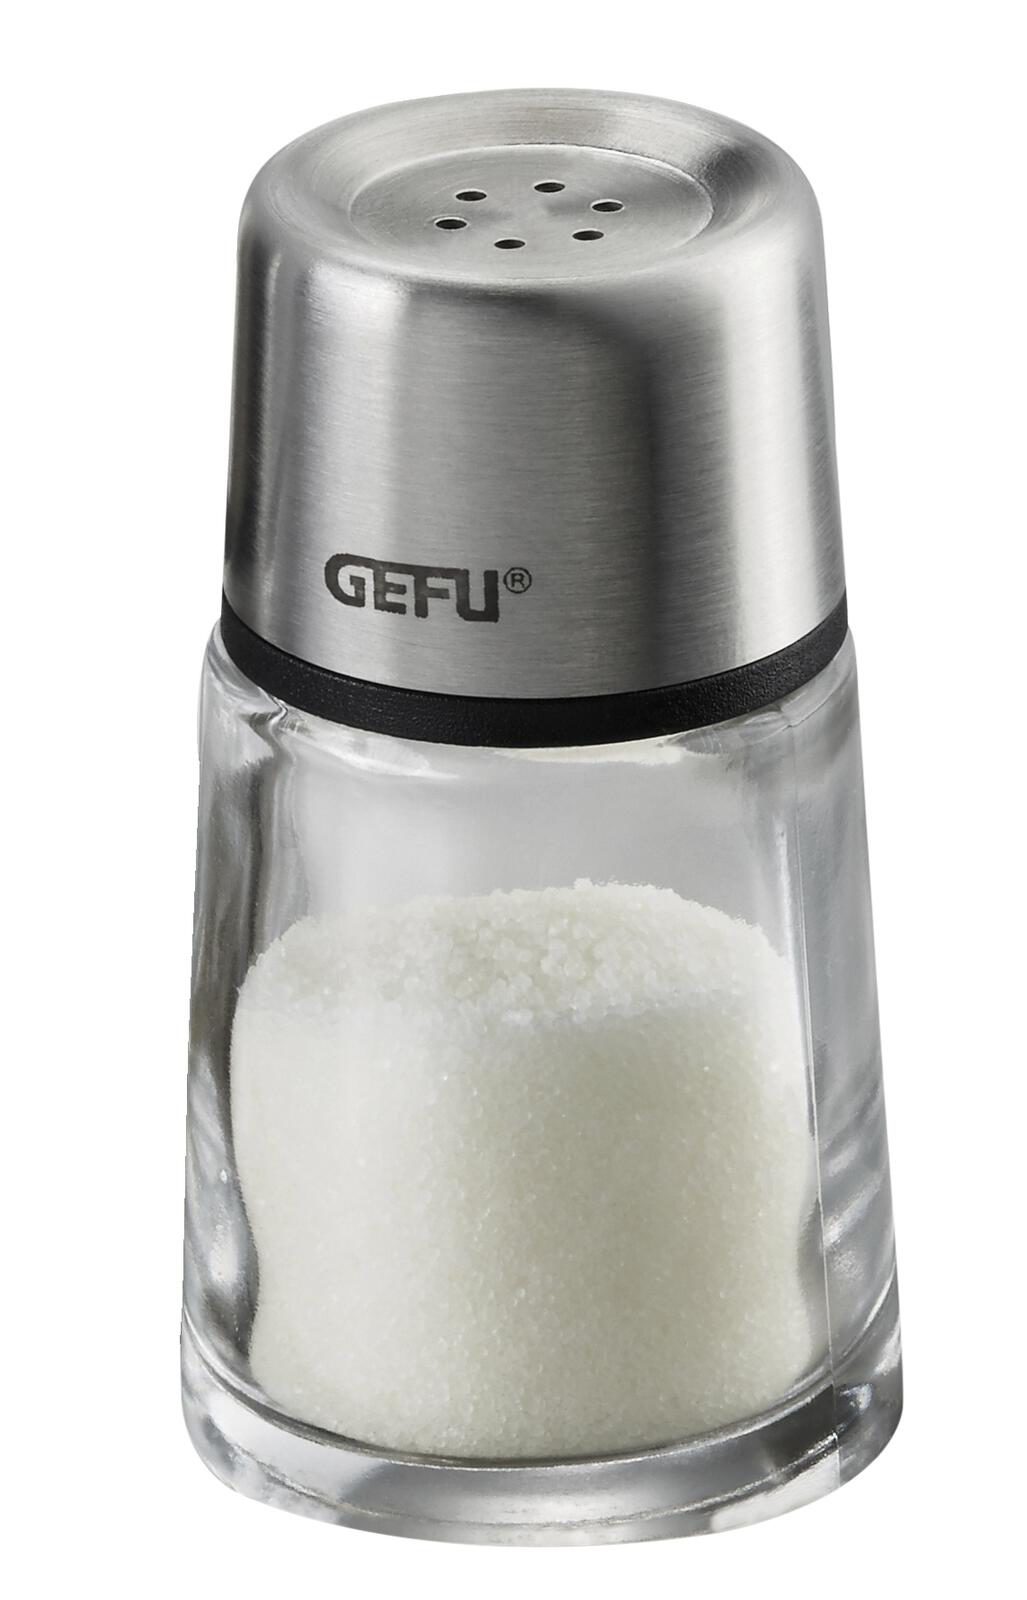 Küchenhelfer Gefu aus Kunststoff Glas in Edelstahl GEFU Salz- Pfefferstreuer aus hochwertigem Edelstahl & Kunststoff & Glas